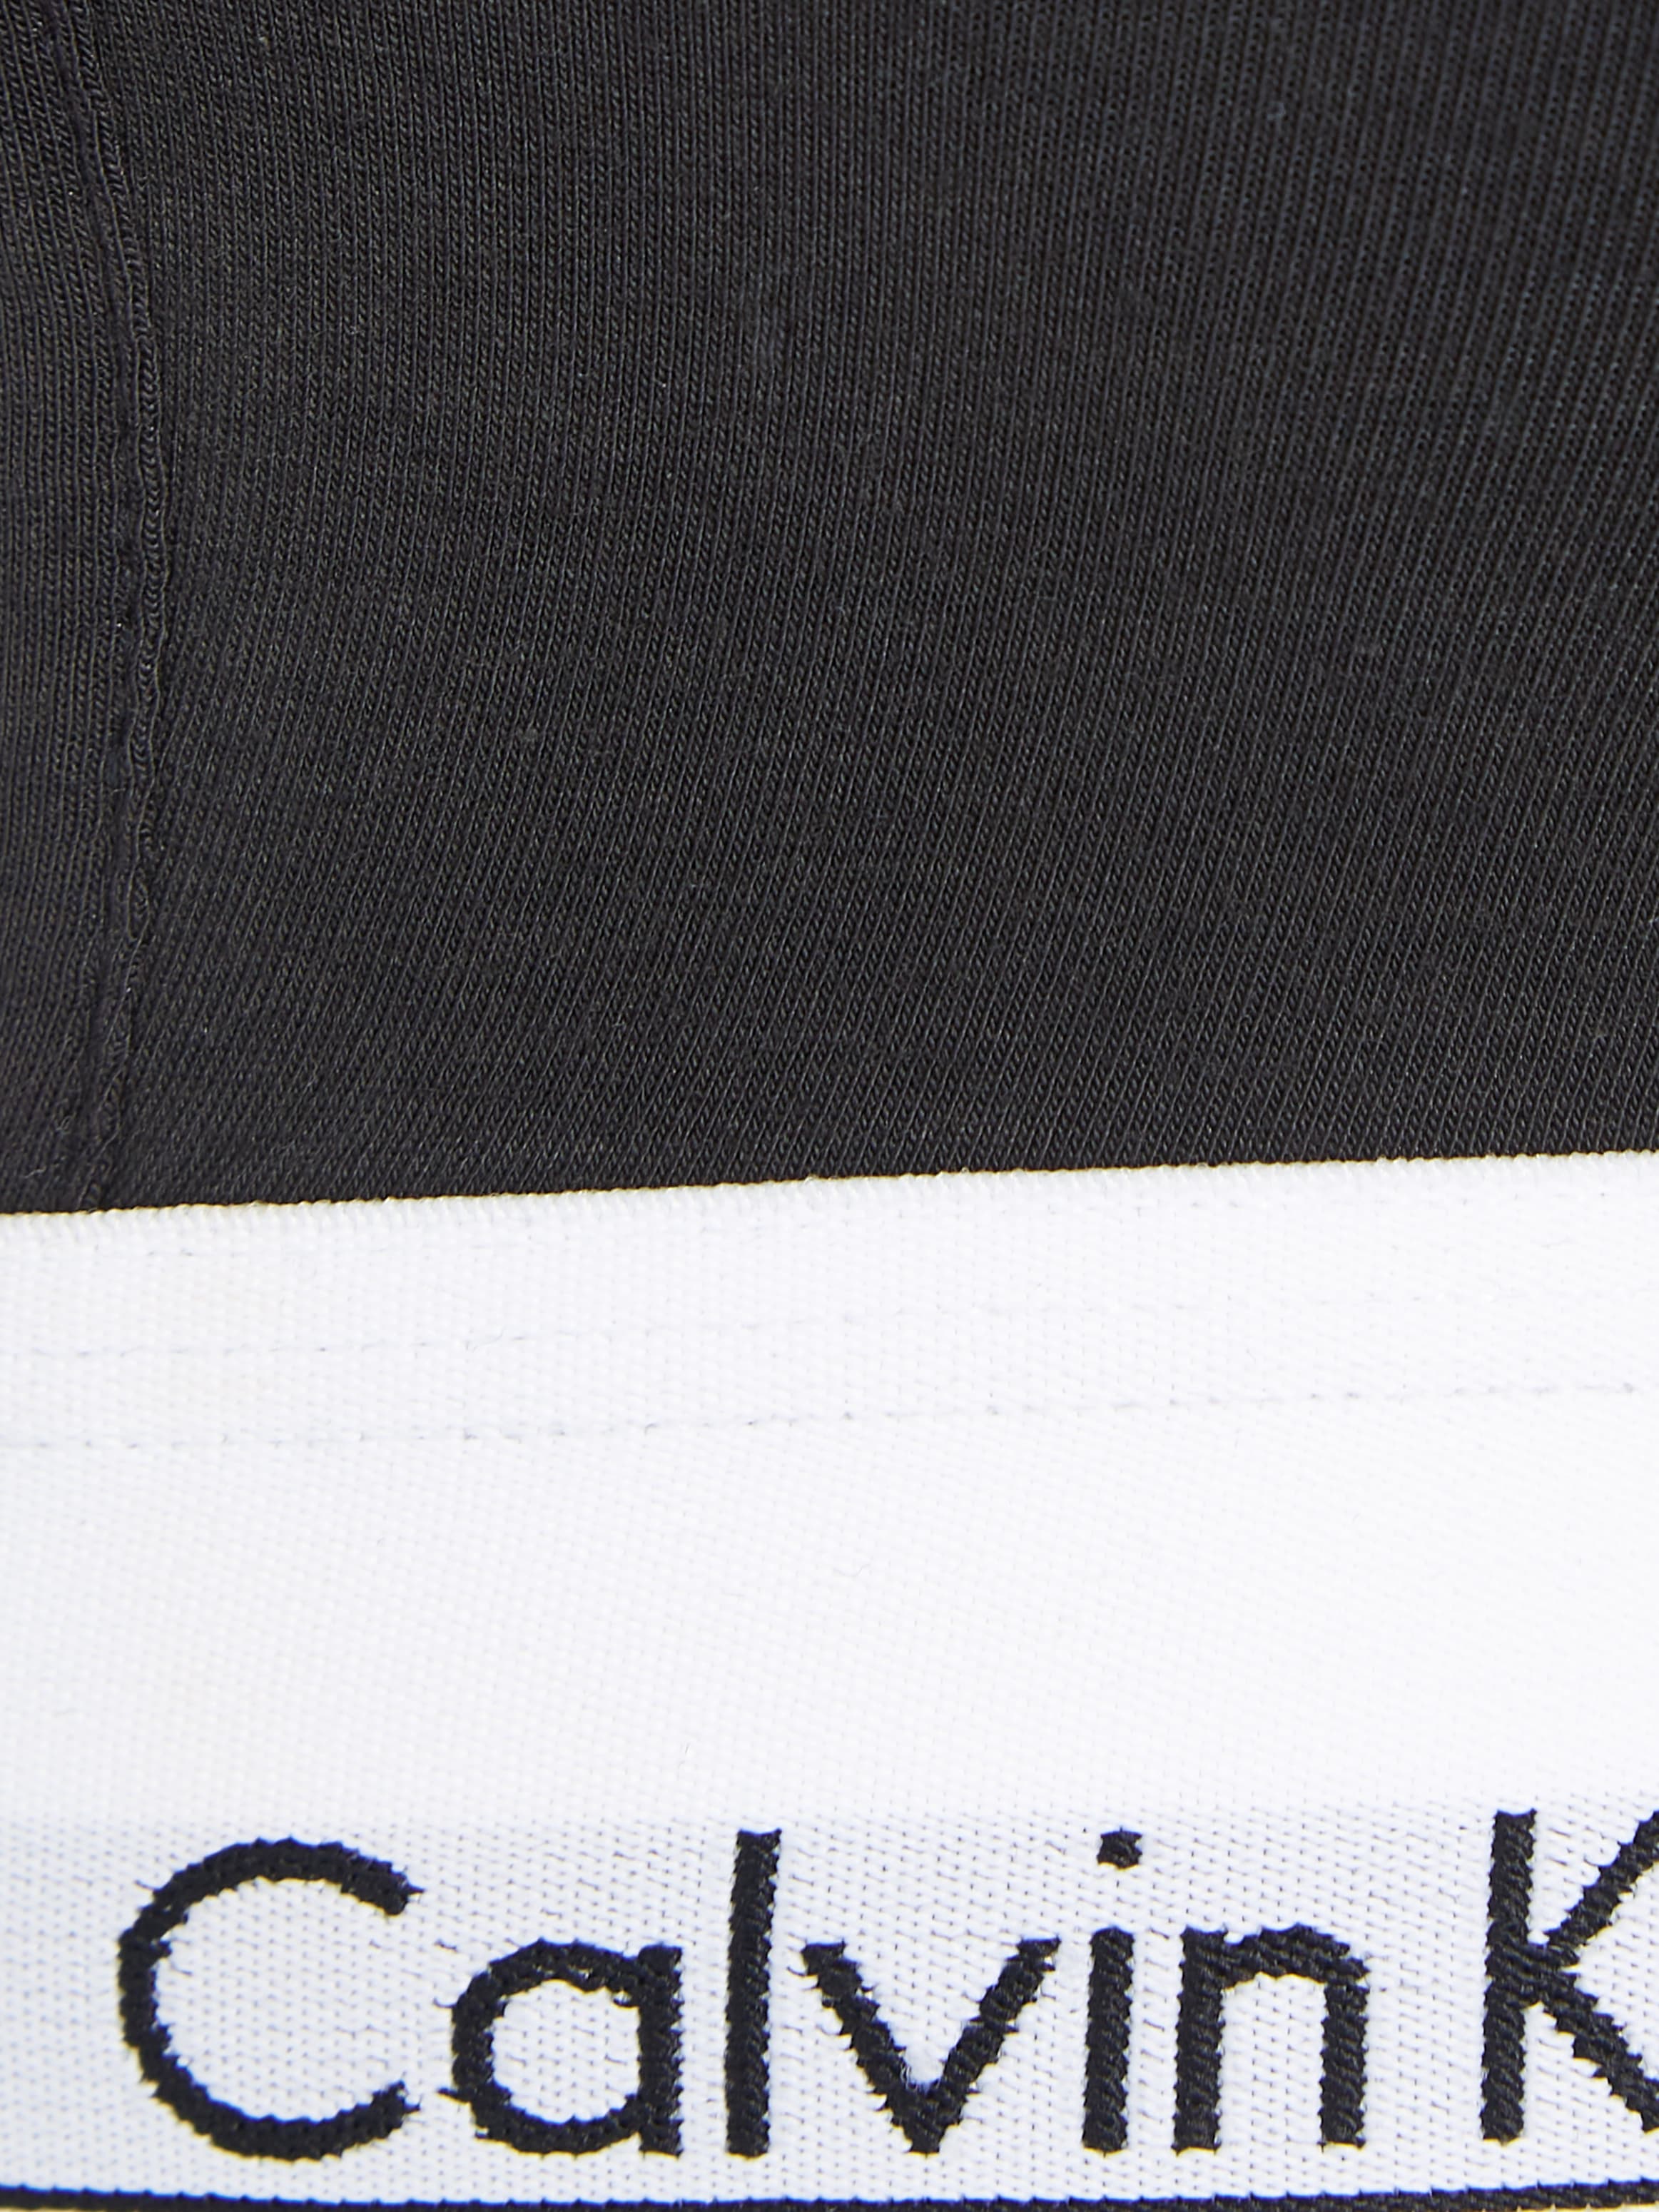 Calvin Klein Underwear Bralette-BH, mit CK Logo am Bund sowie den Trägern